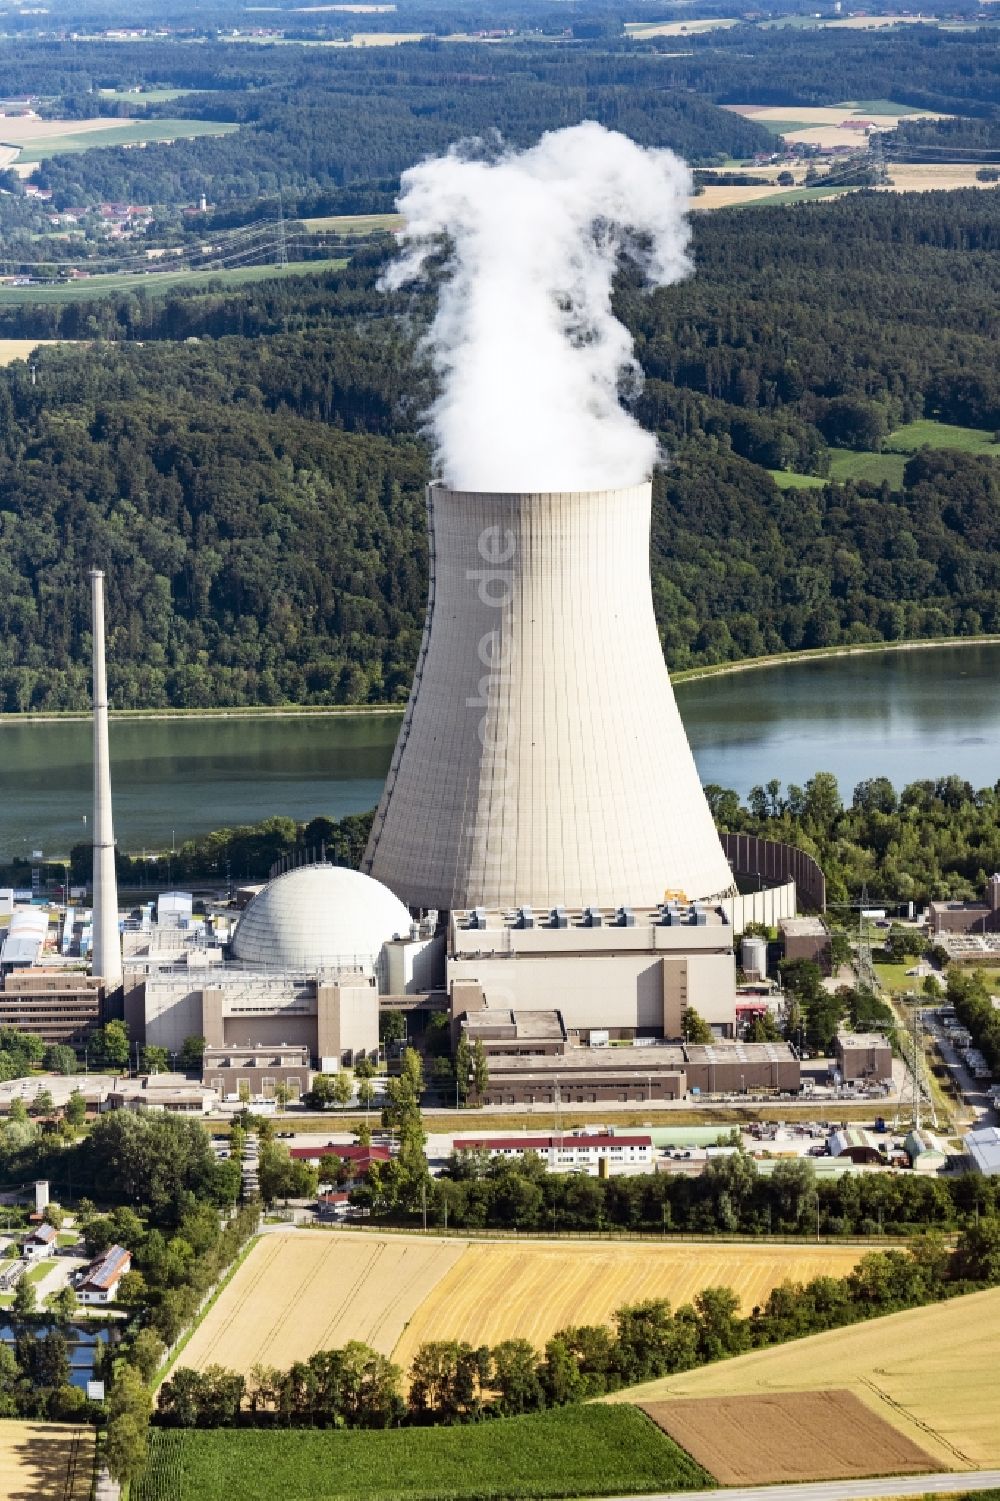 Essenbach aus der Vogelperspektive: Reaktorblöcke und Anlagen des AKW - KKW Kernkraftwerk in Essenbach im Bundesland Bayern, Deutschland